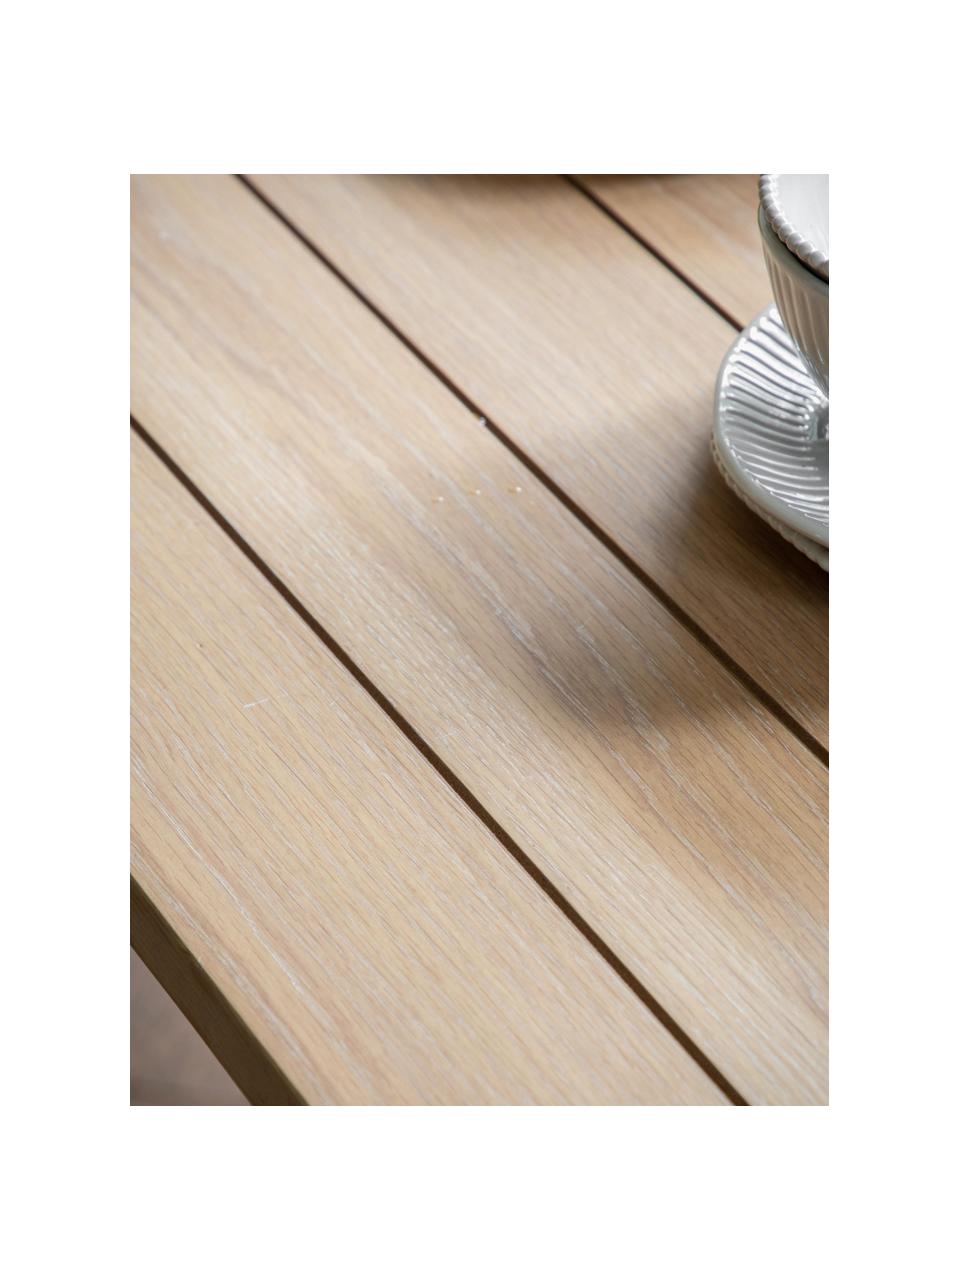 Rozkládací dřevěný jídelní stůl Eton, ručně vyrobený, 180 - 230 x 95 cm, Dubové dřevo, taupe, Š 180-230 cm, H 95 cm